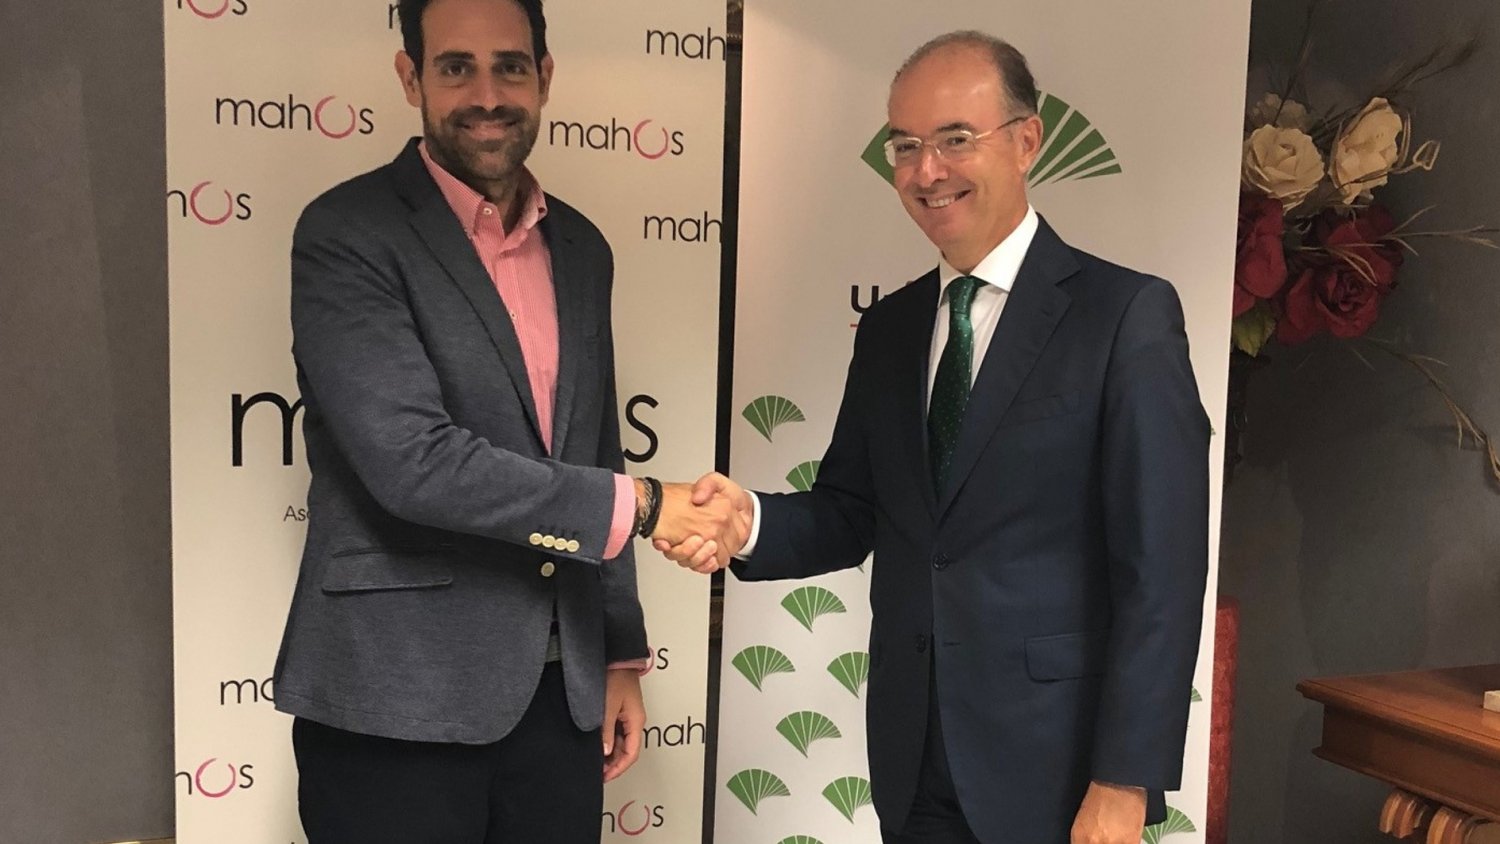 Unicaja Banco apoya al sector hostelero de Málaga mediante la firma de un convenio con Mahos